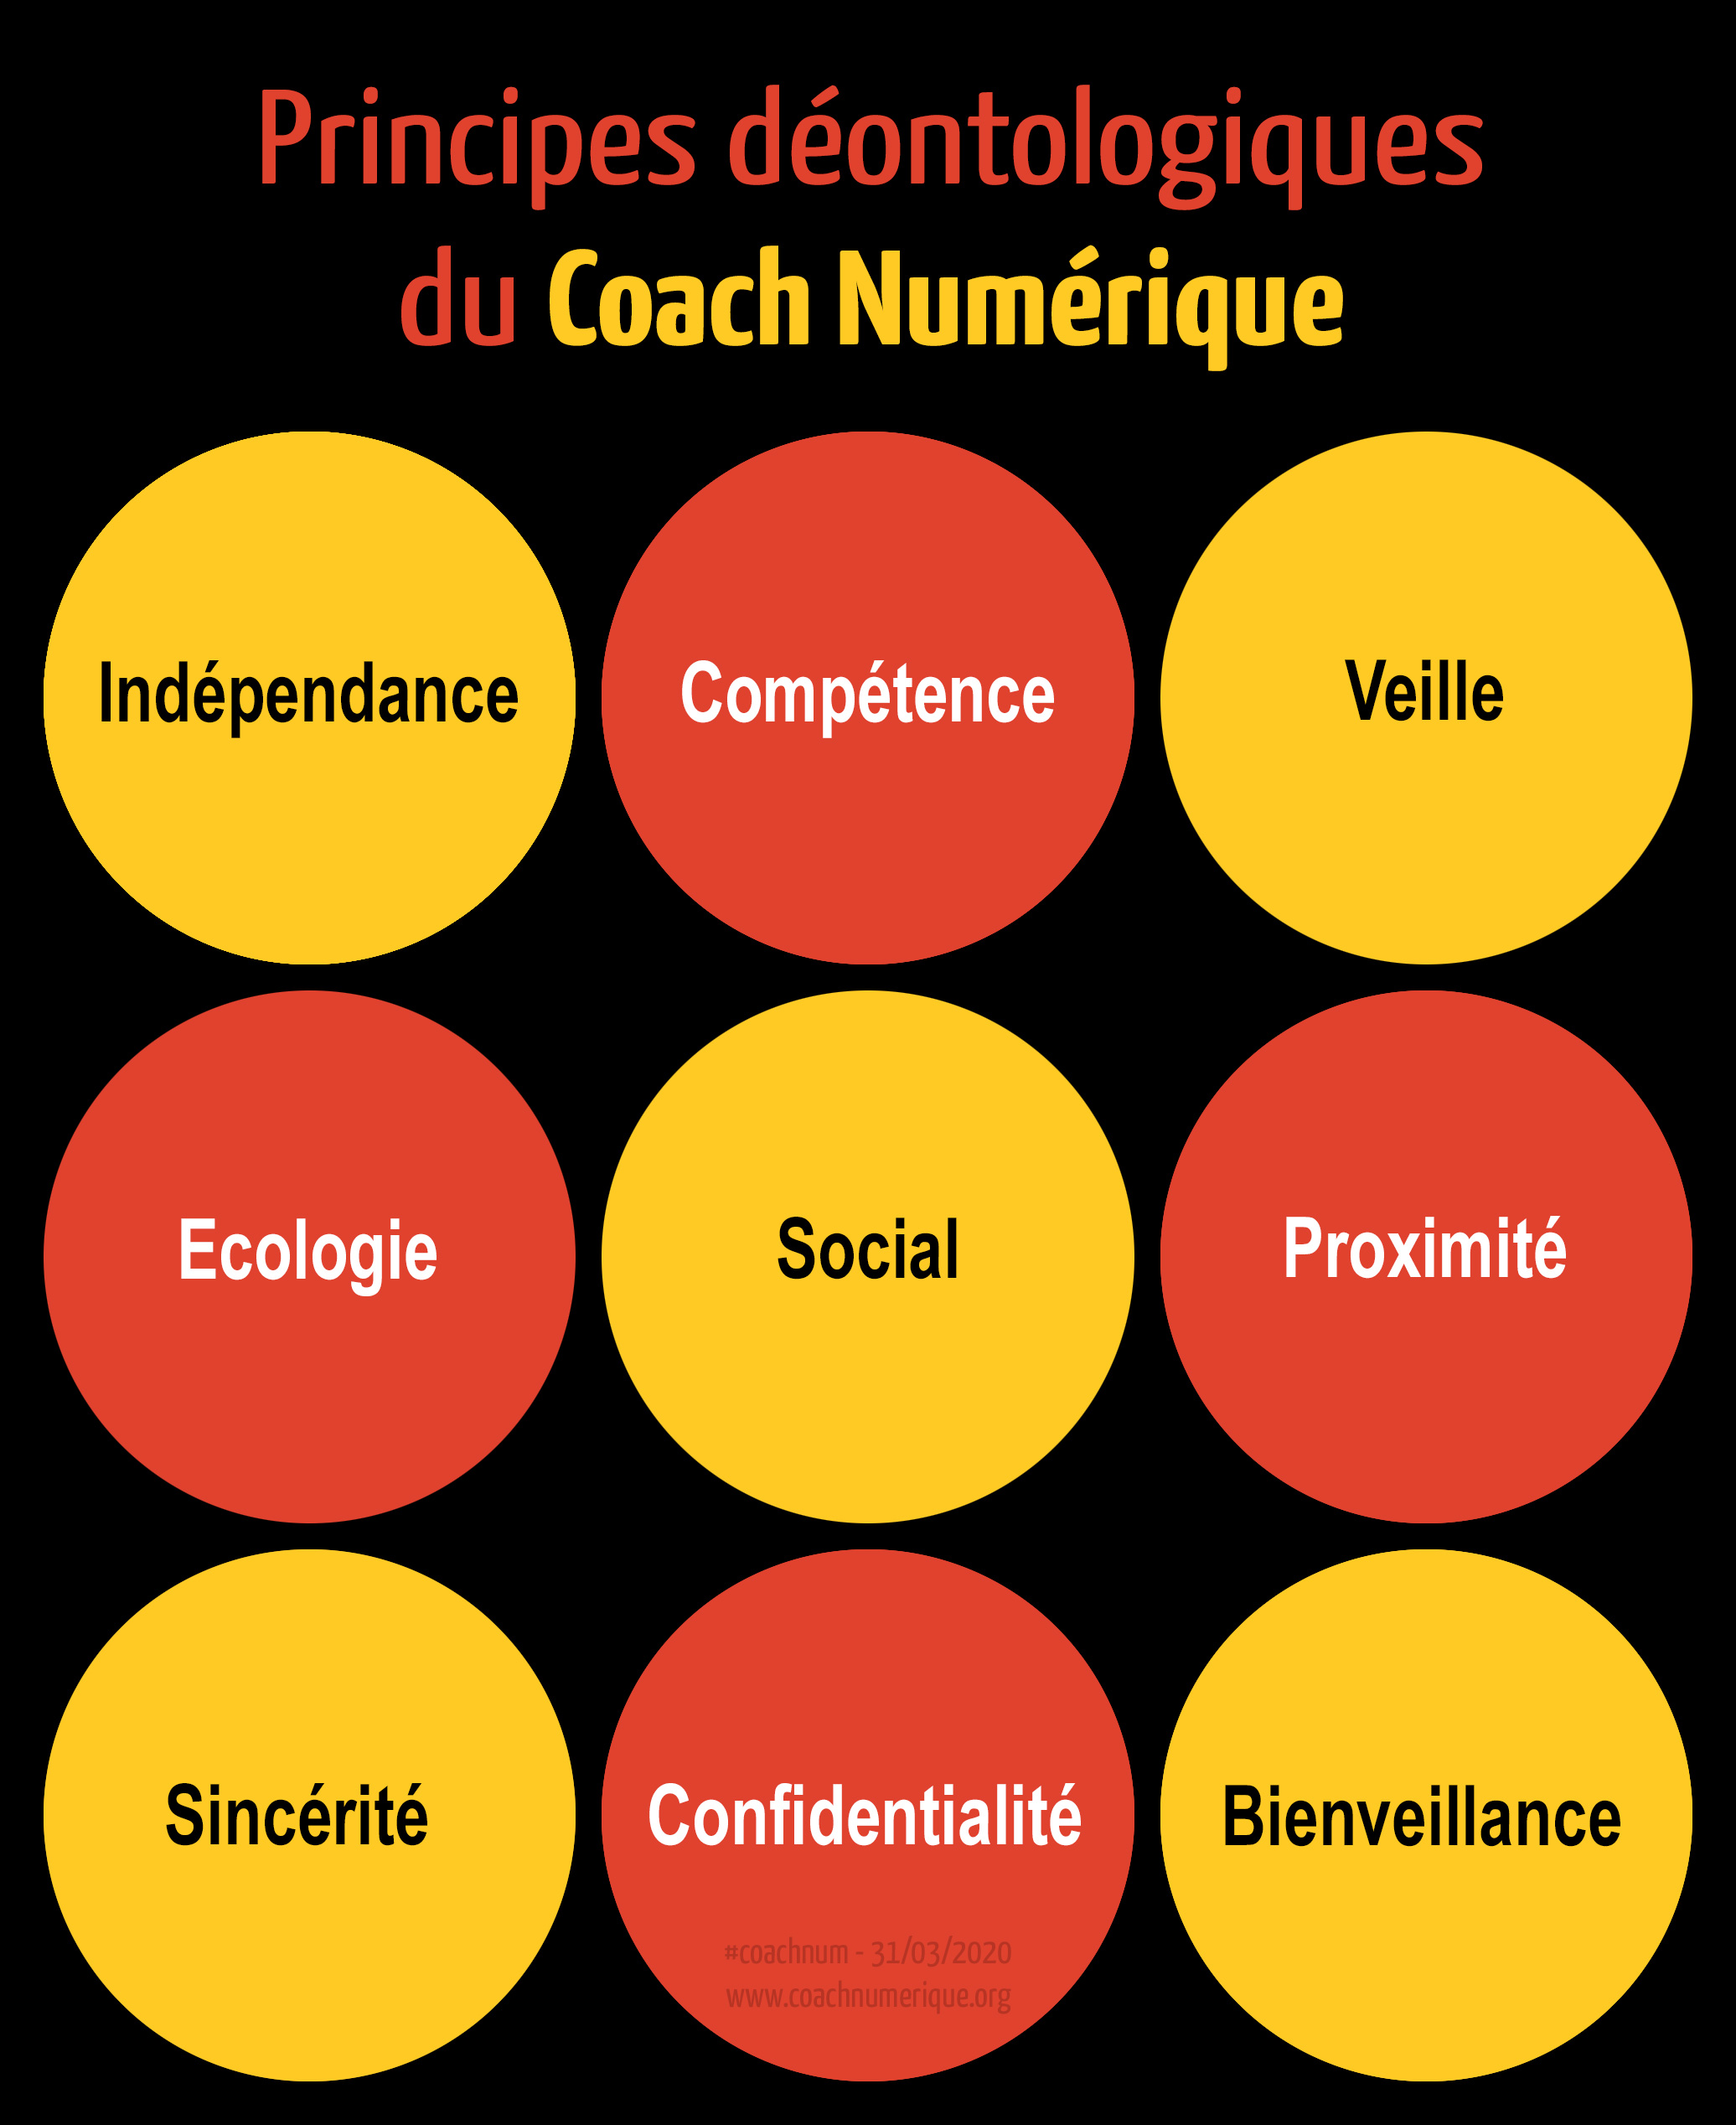 Principes déontologiques du Coach Numérique : Indépendance, Compétence, Veille, Ecologie, Social, Proximité, Sincérité, Confidentialité, Bienveillance